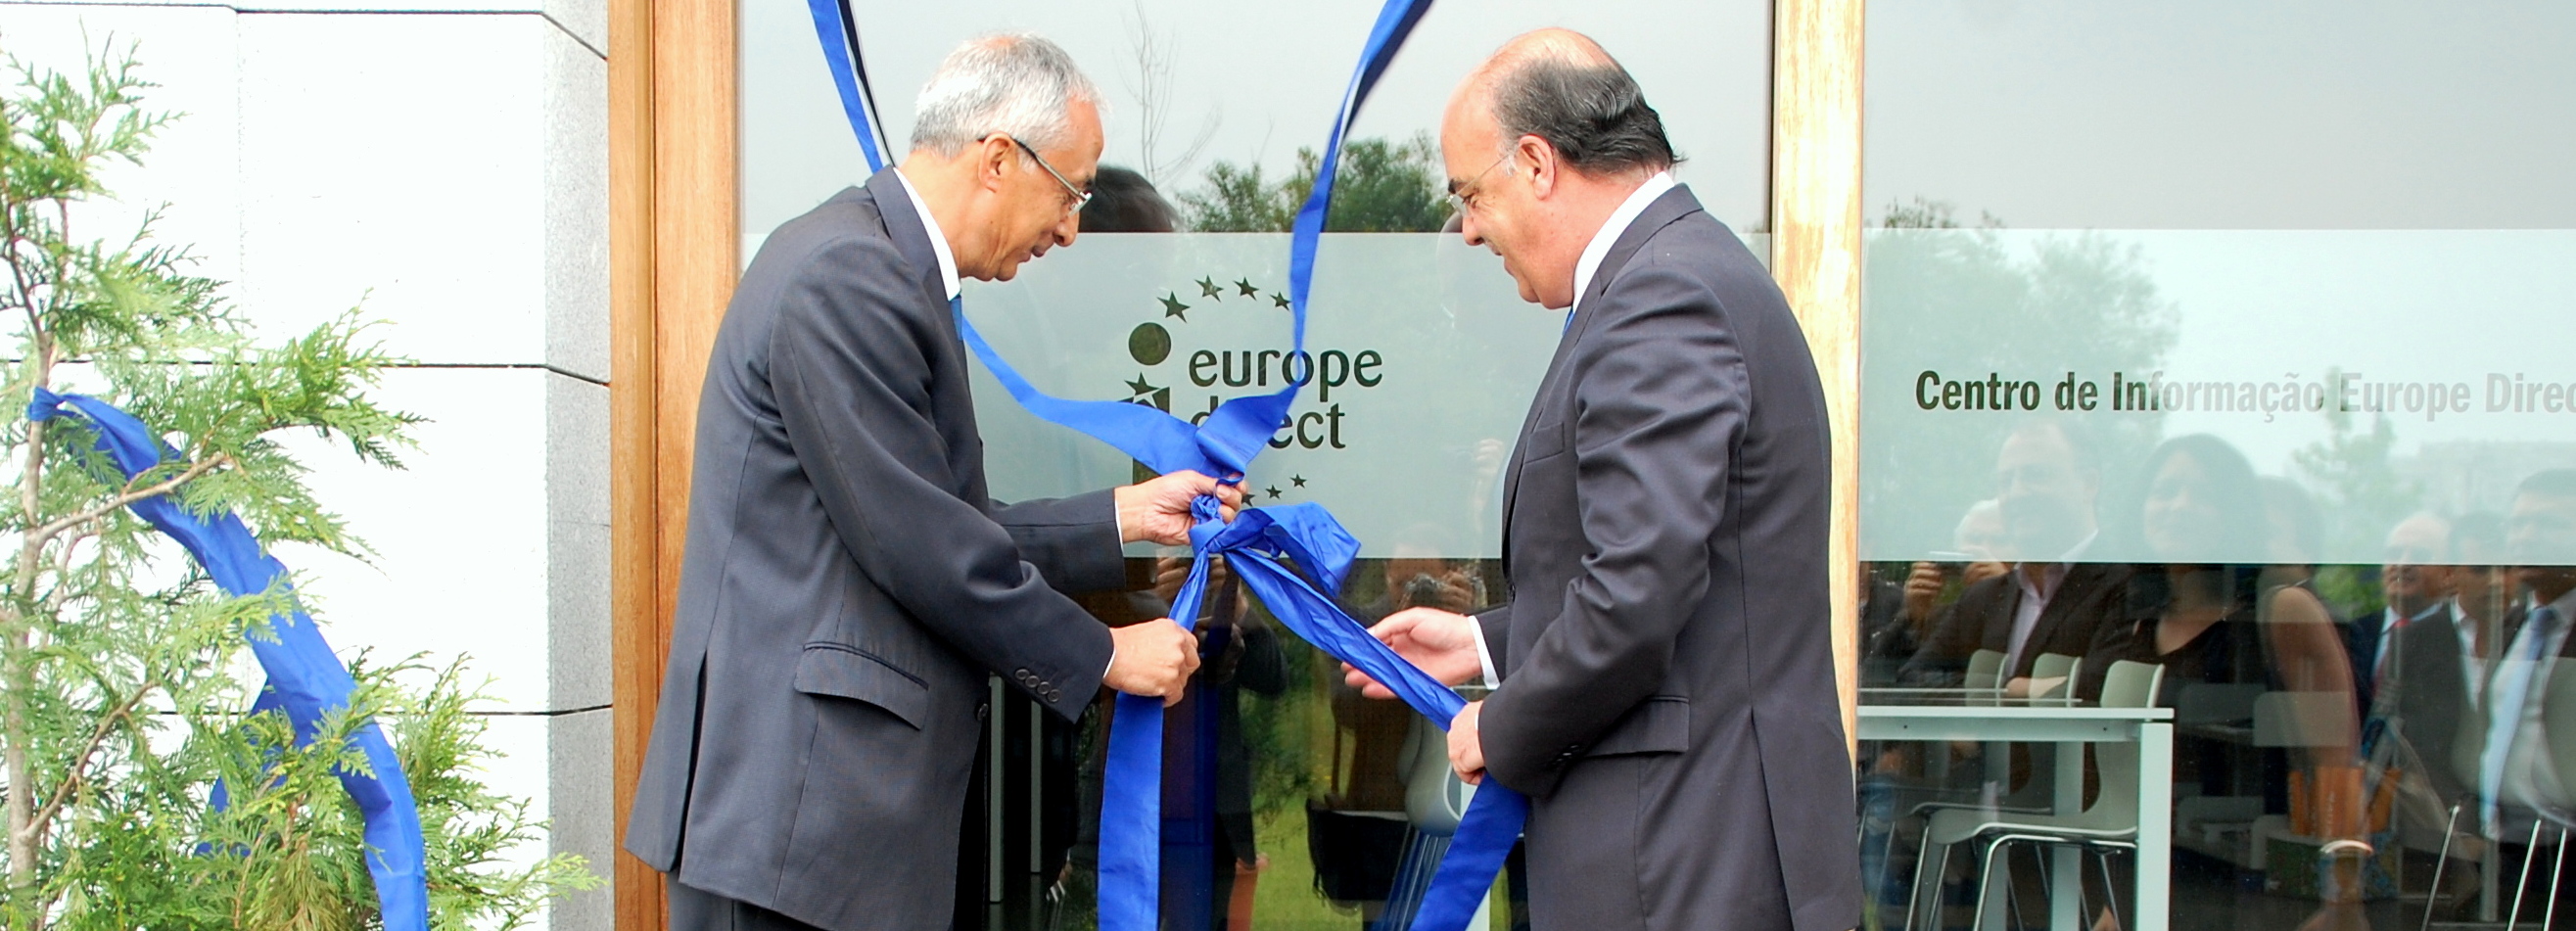 IPCA inaugura Centro de Informação Europe Direct